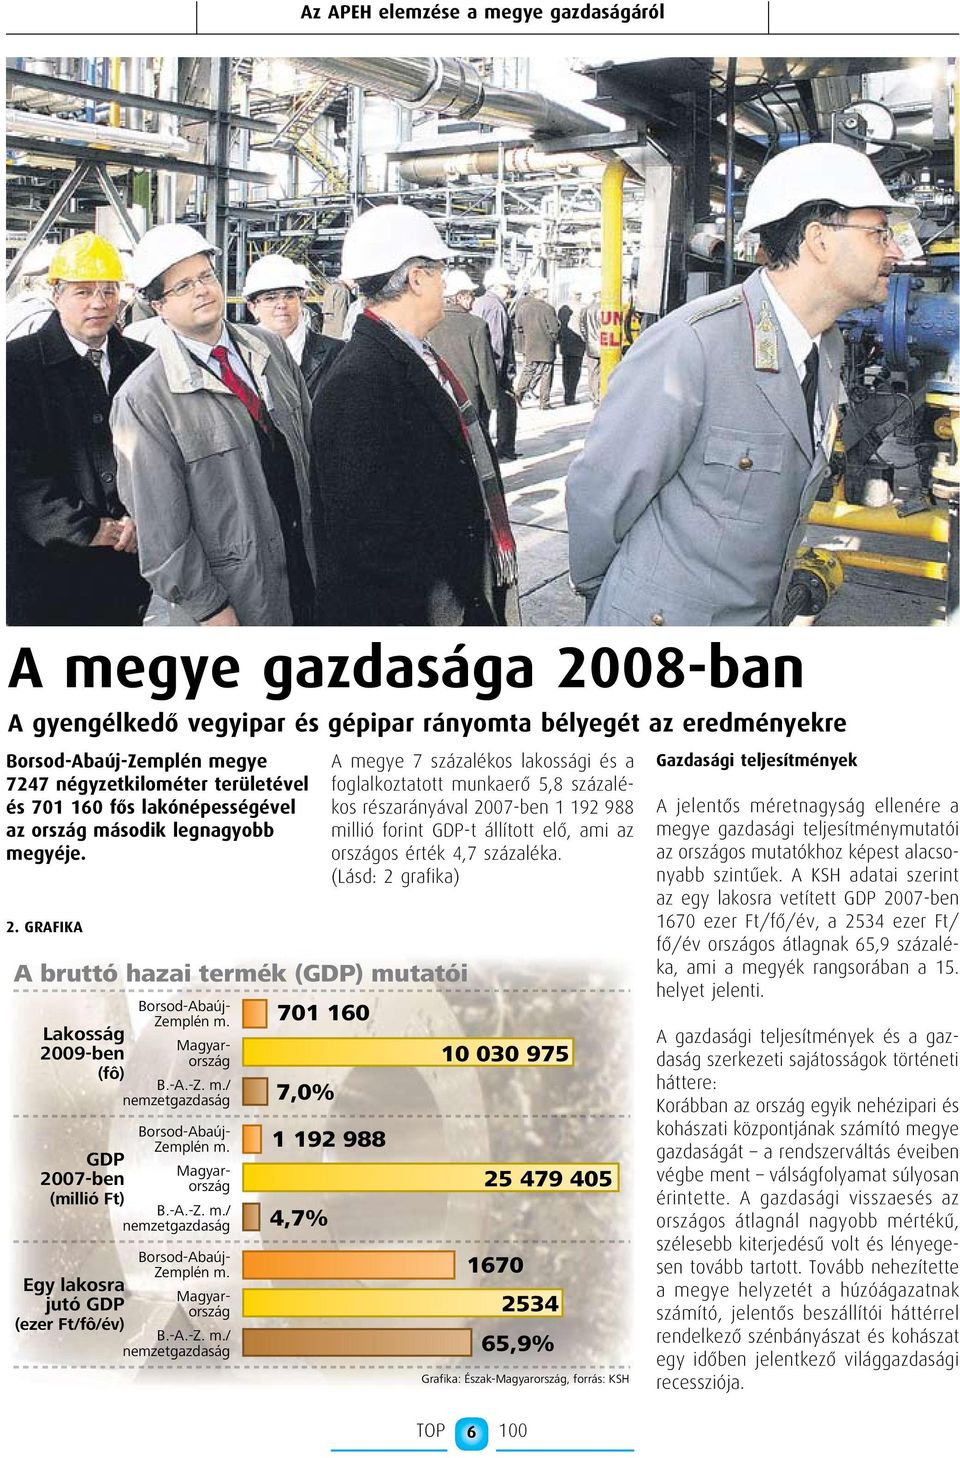 GRA FI KA A bruttó hazai termék (GDP) mutatói Lakosság 2009-ben (fô) GDP 2007-ben (millió Ft) Egy lakosra jutó GDP (ezer Ft/fô/év) Borsod-Abaúj- Zemplén m. B.-A.-Z. m./ nemzetgazdaság Magyarország Borsod-Abaúj- Zemplén m.